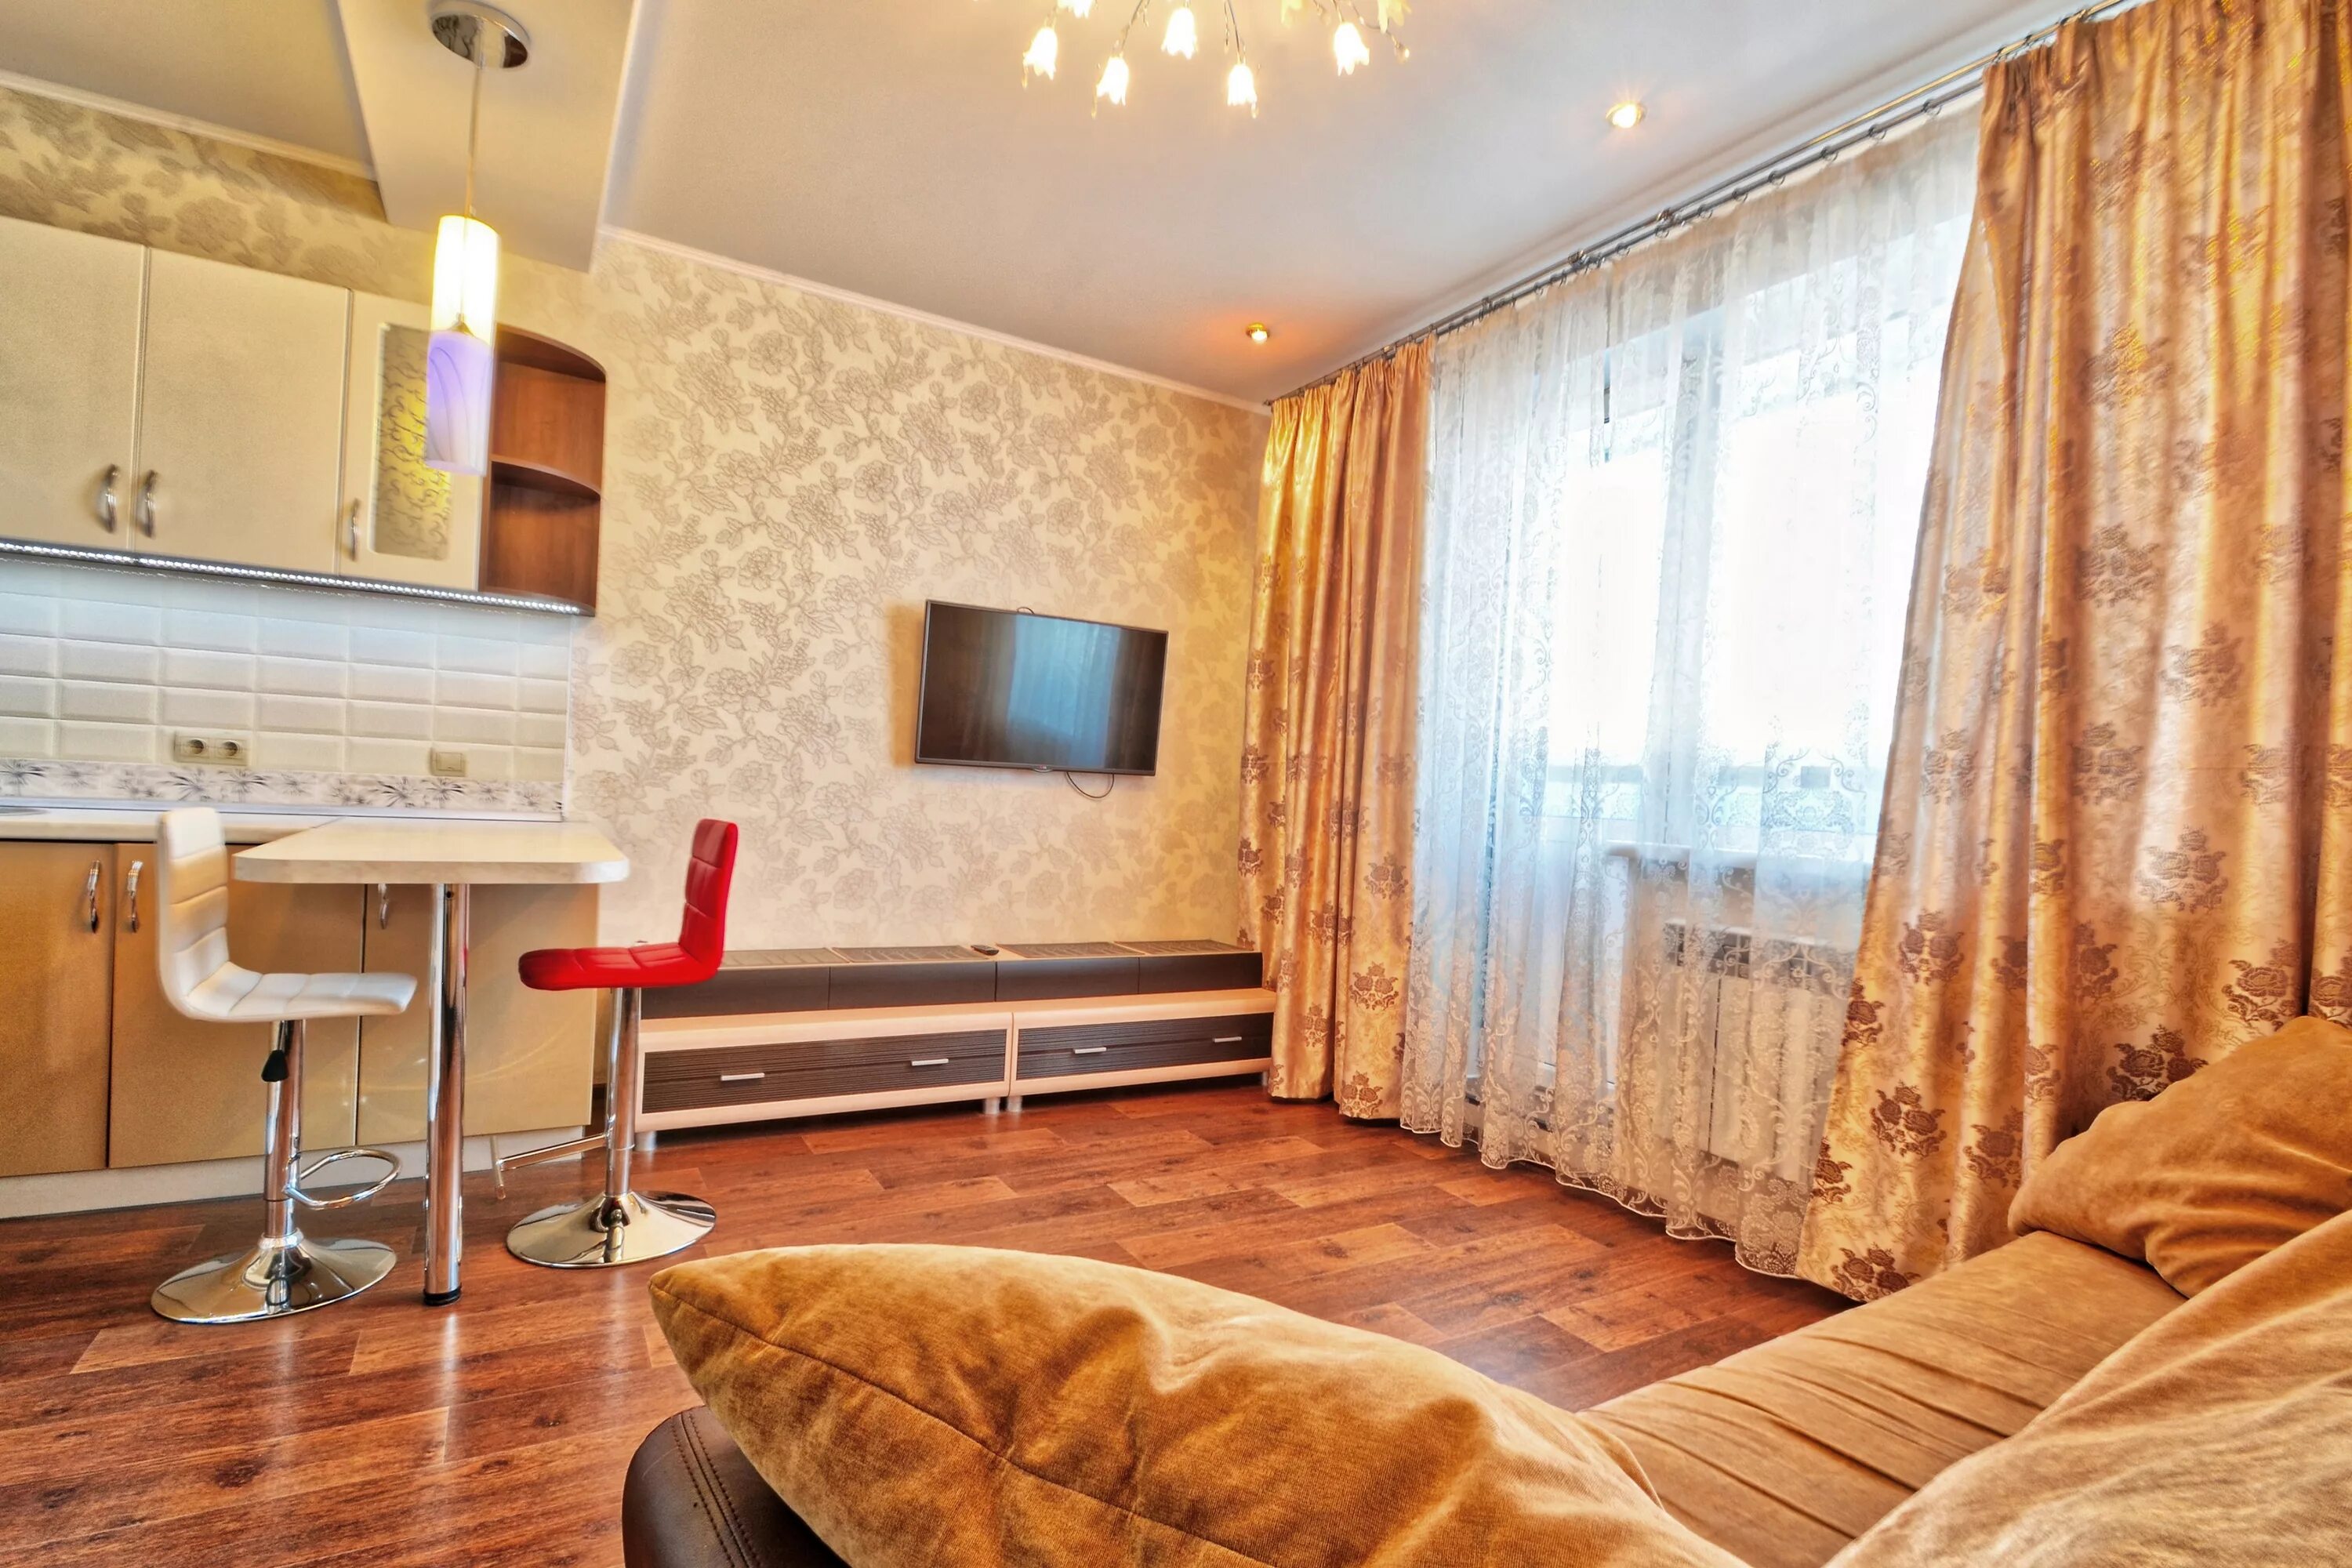 Квартира однушка циан. Однокомнатная квартира. Квартиры в Новосибирске. Съемная квартира. Однокомнатная квартира дешевая.